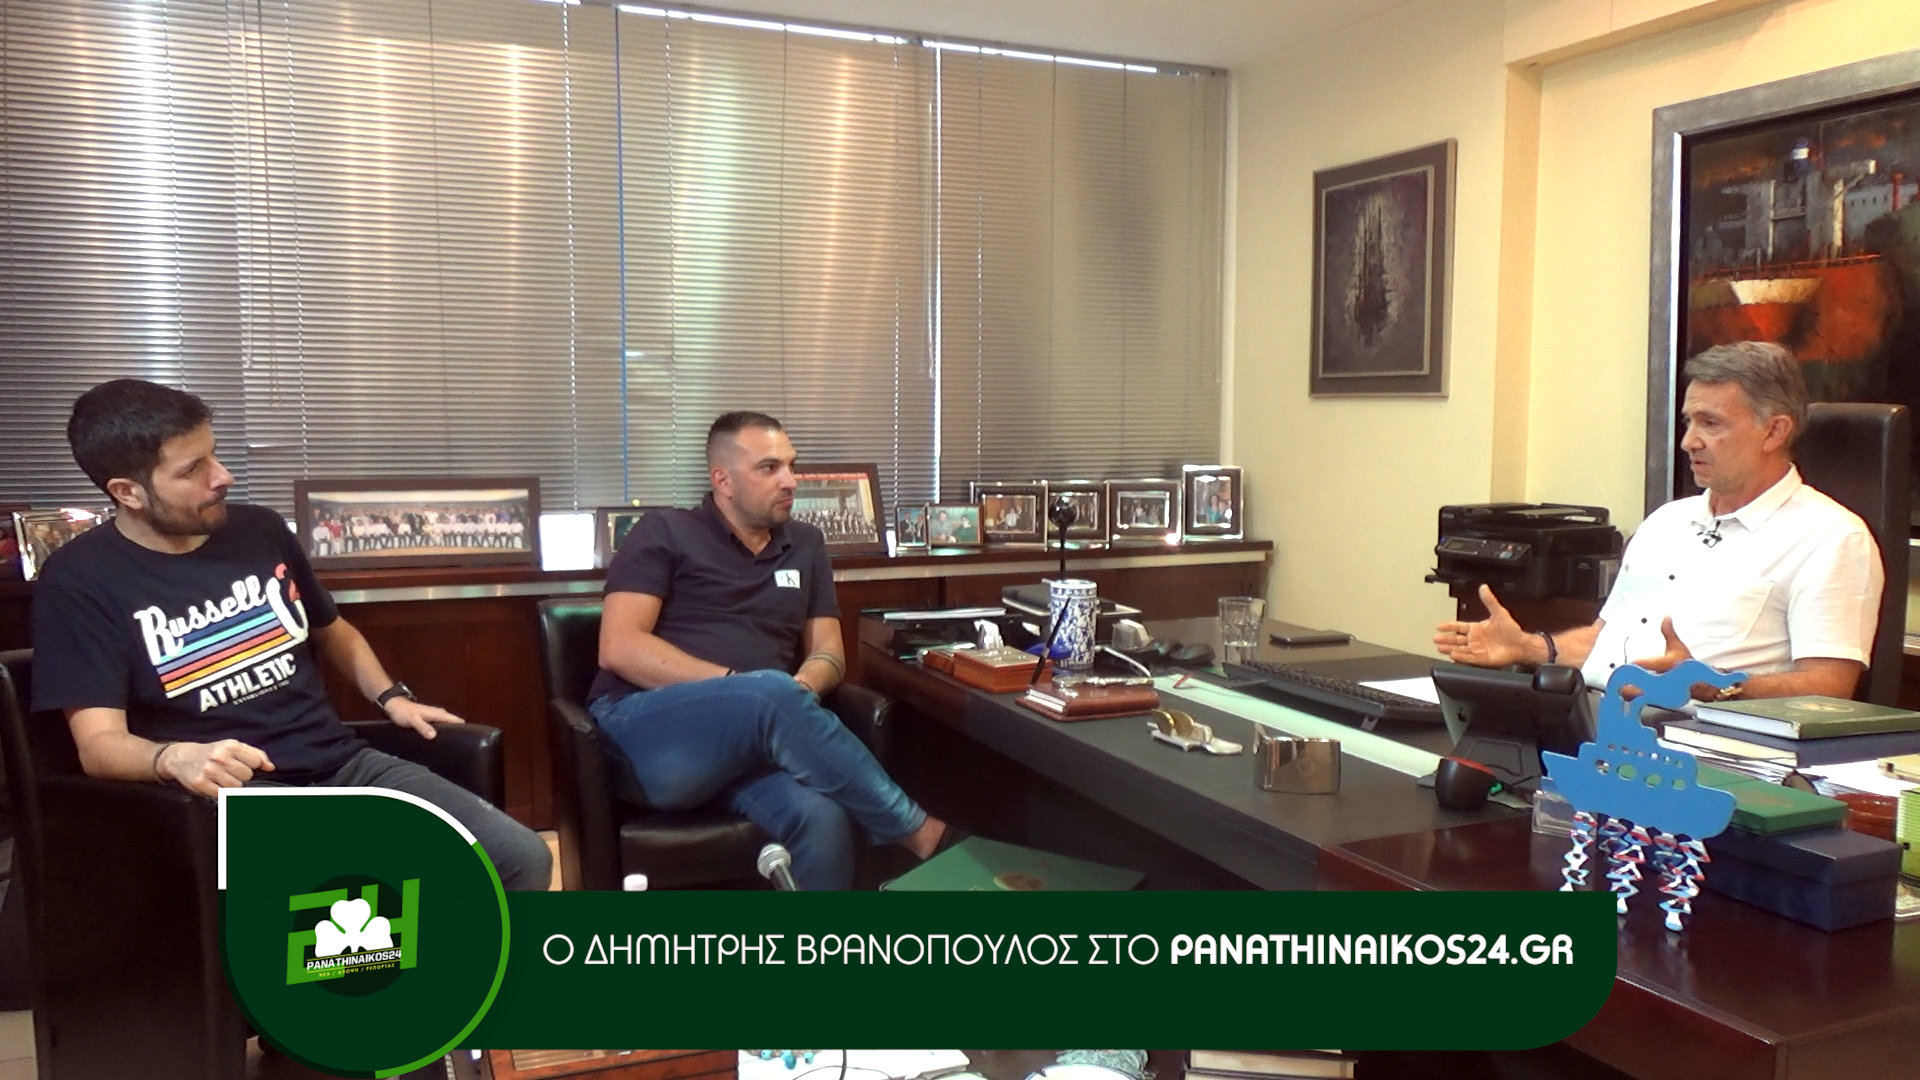 Ο Δημήτρης Βρανόπουλος στo panathinaikos24.gr (LIVE VIDEO)